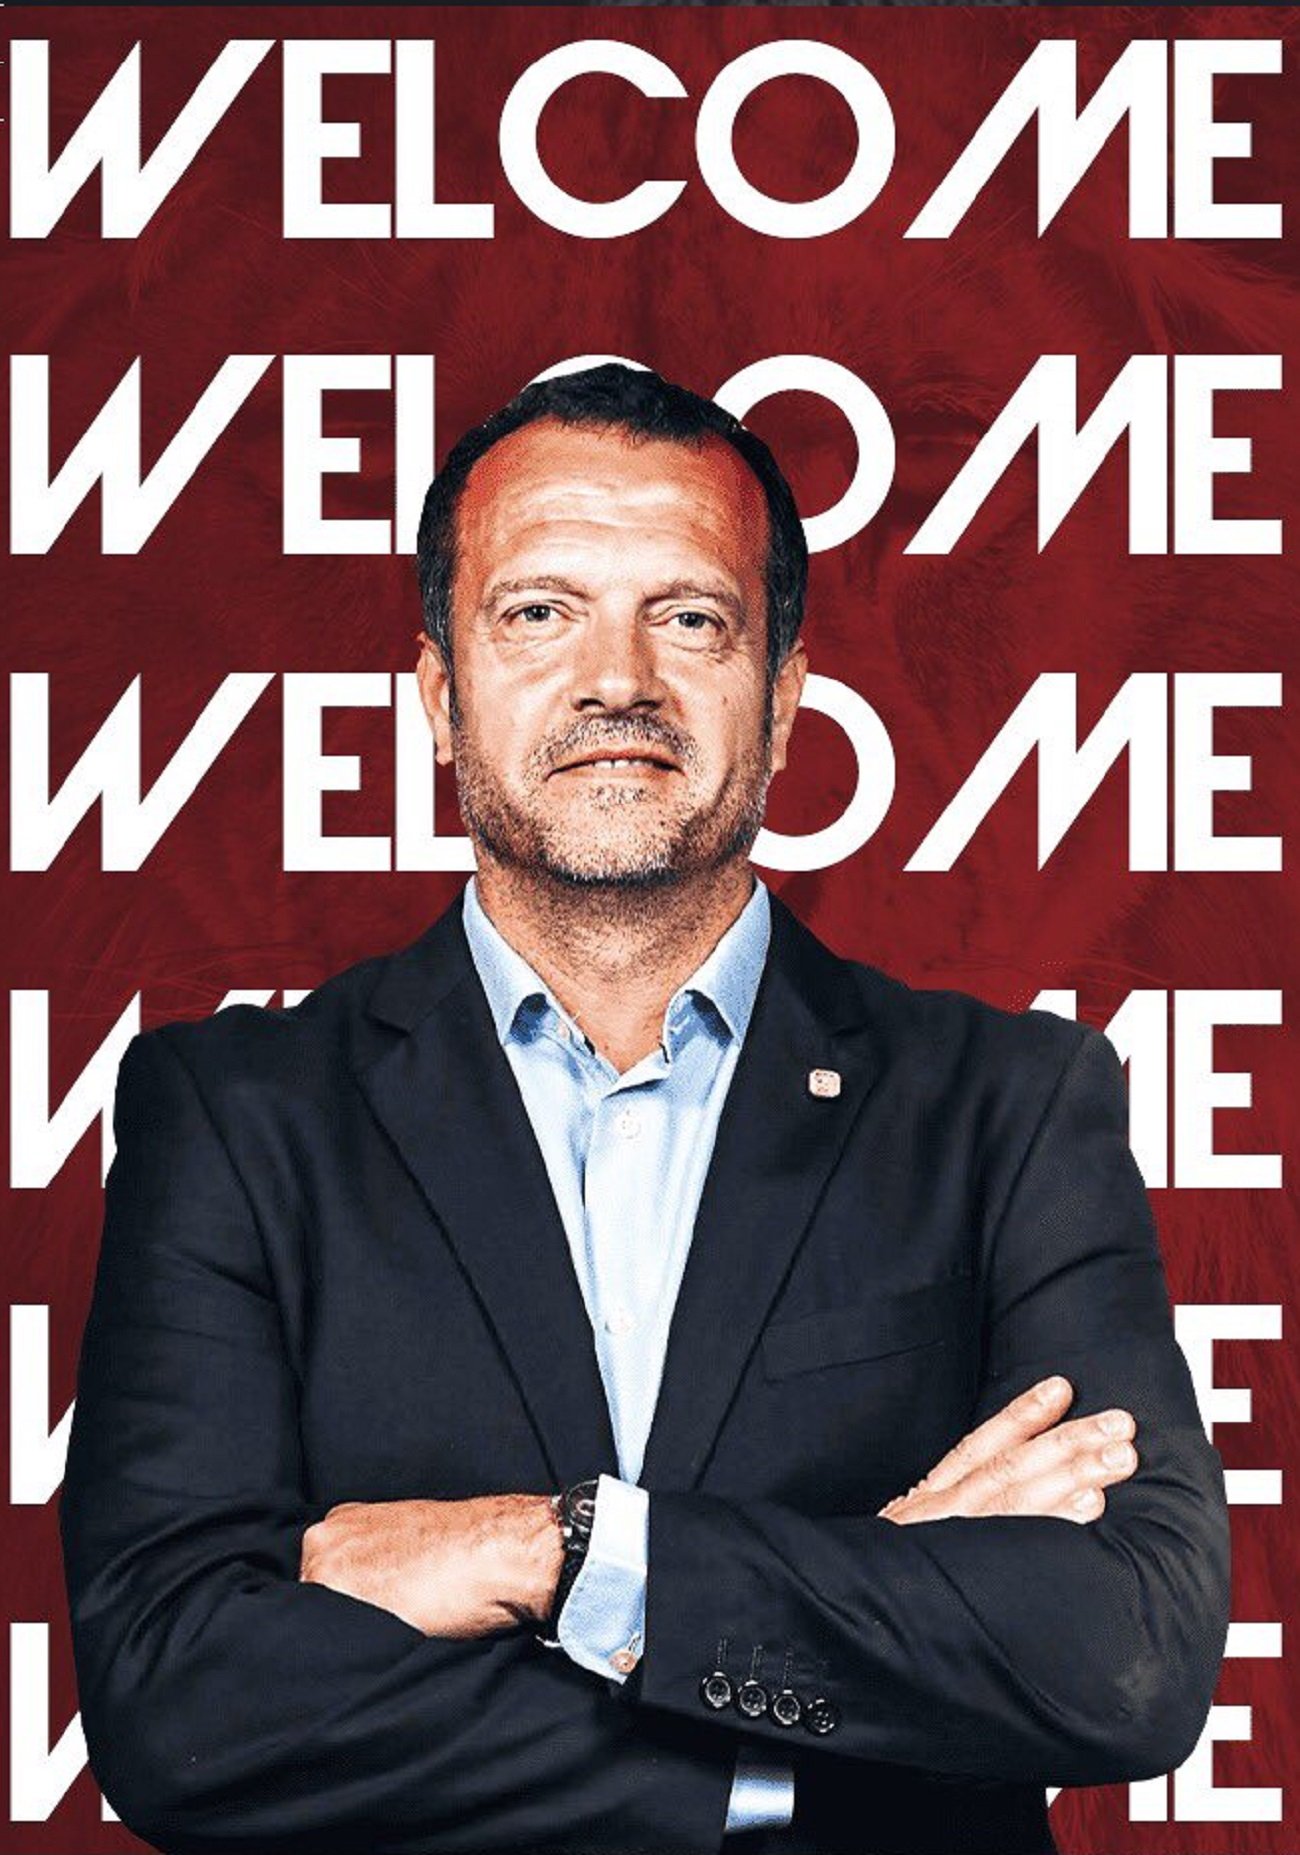 Jesús Velasco serà el nou entrenador del Barça de futbol sala